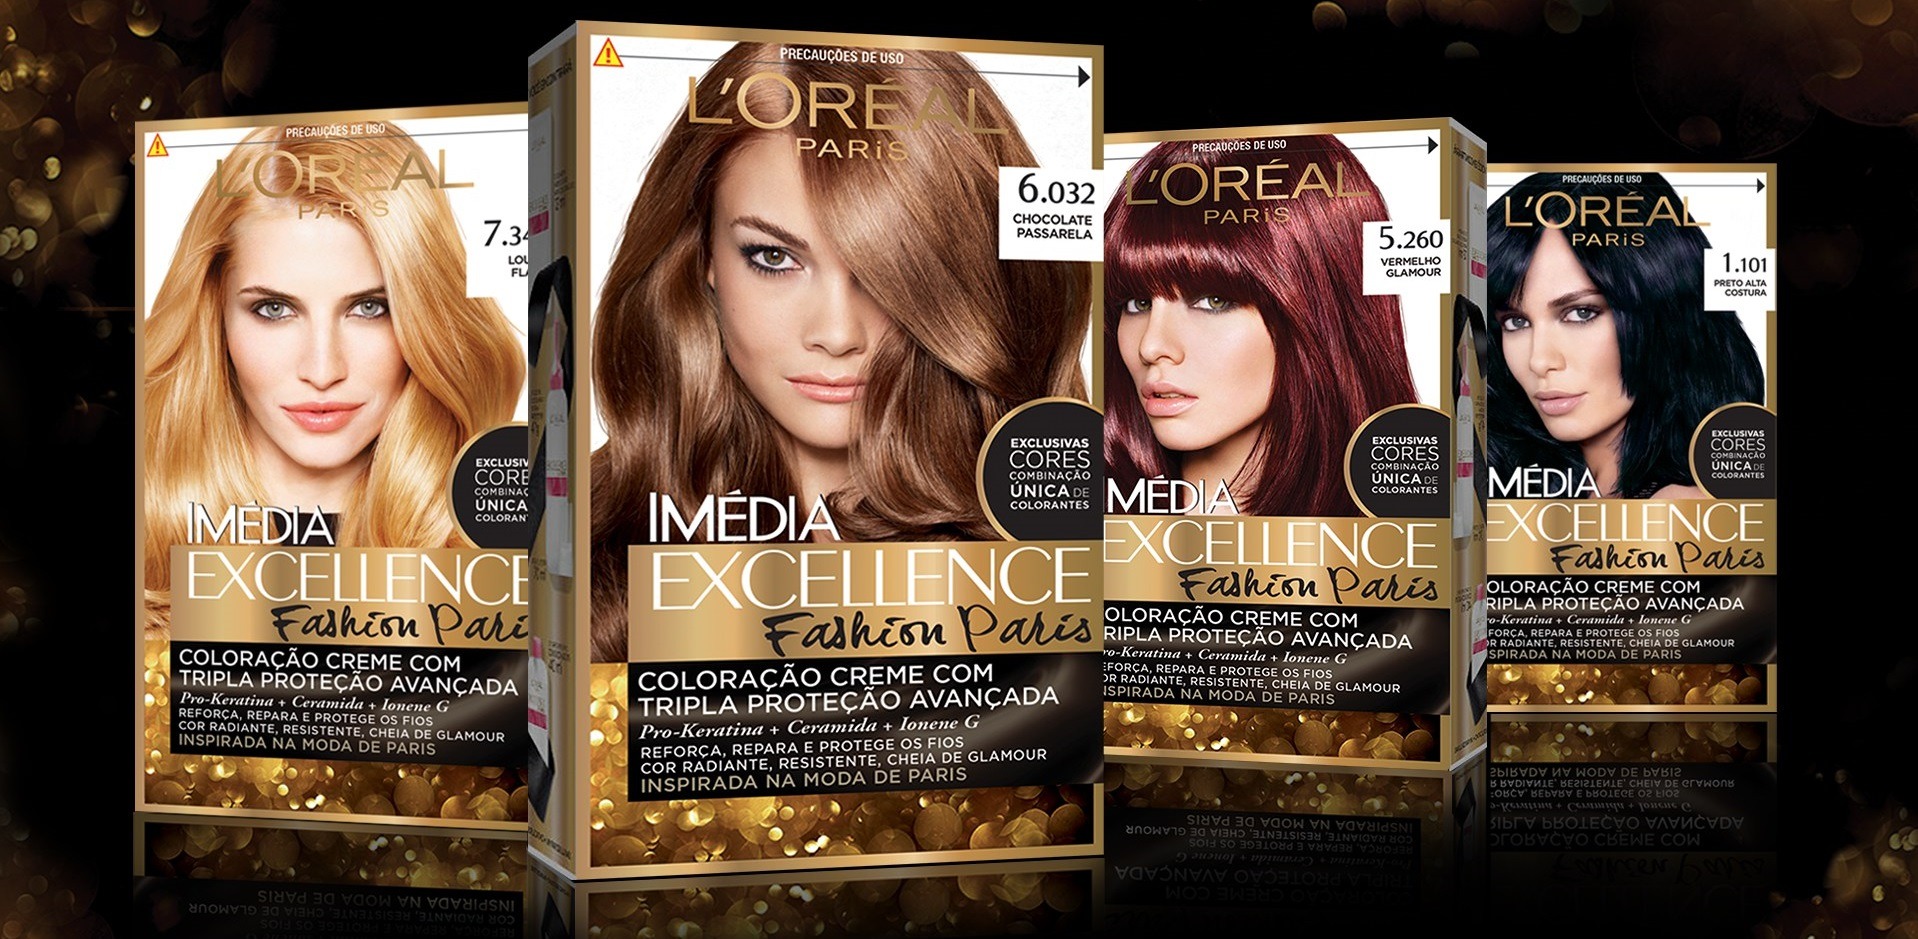 کیت رنگ مو لورآل مدل Excellence شماره 4